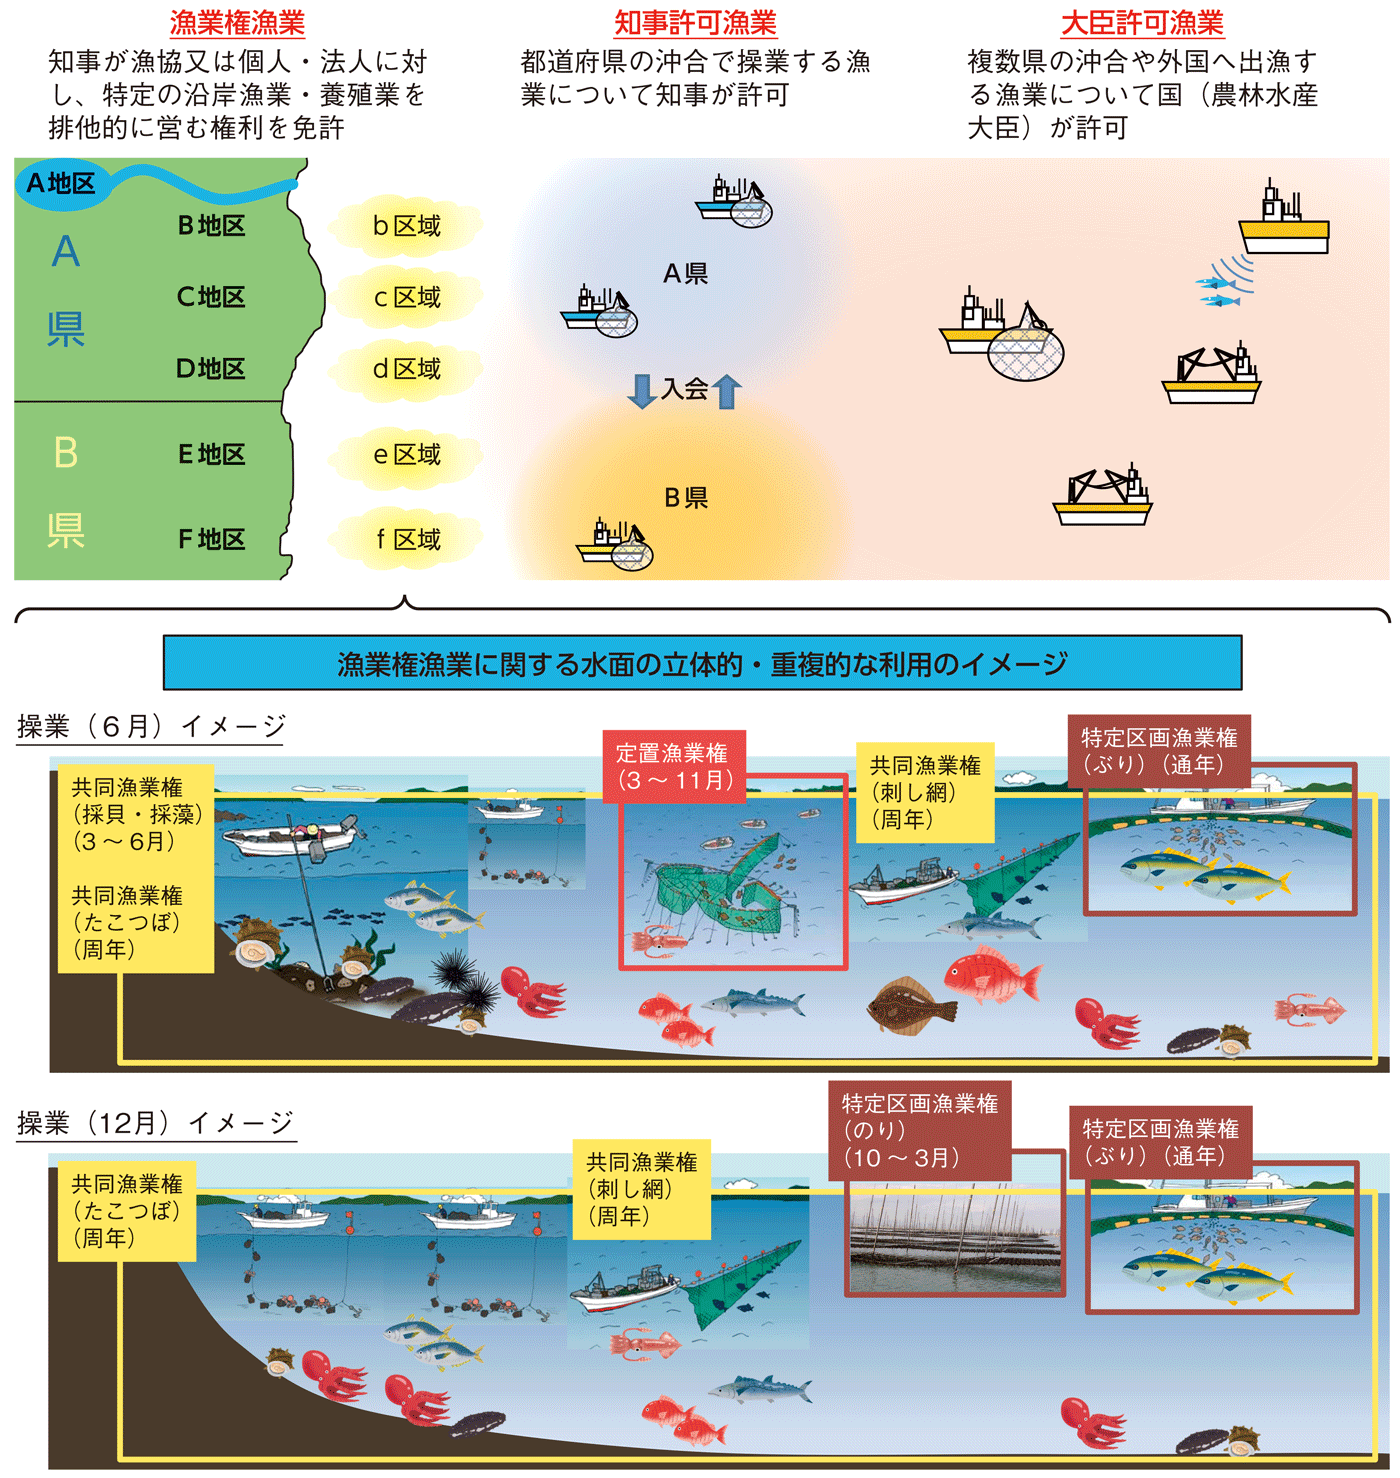 図1-6 漁業権制度及び漁業許可制度の概念図